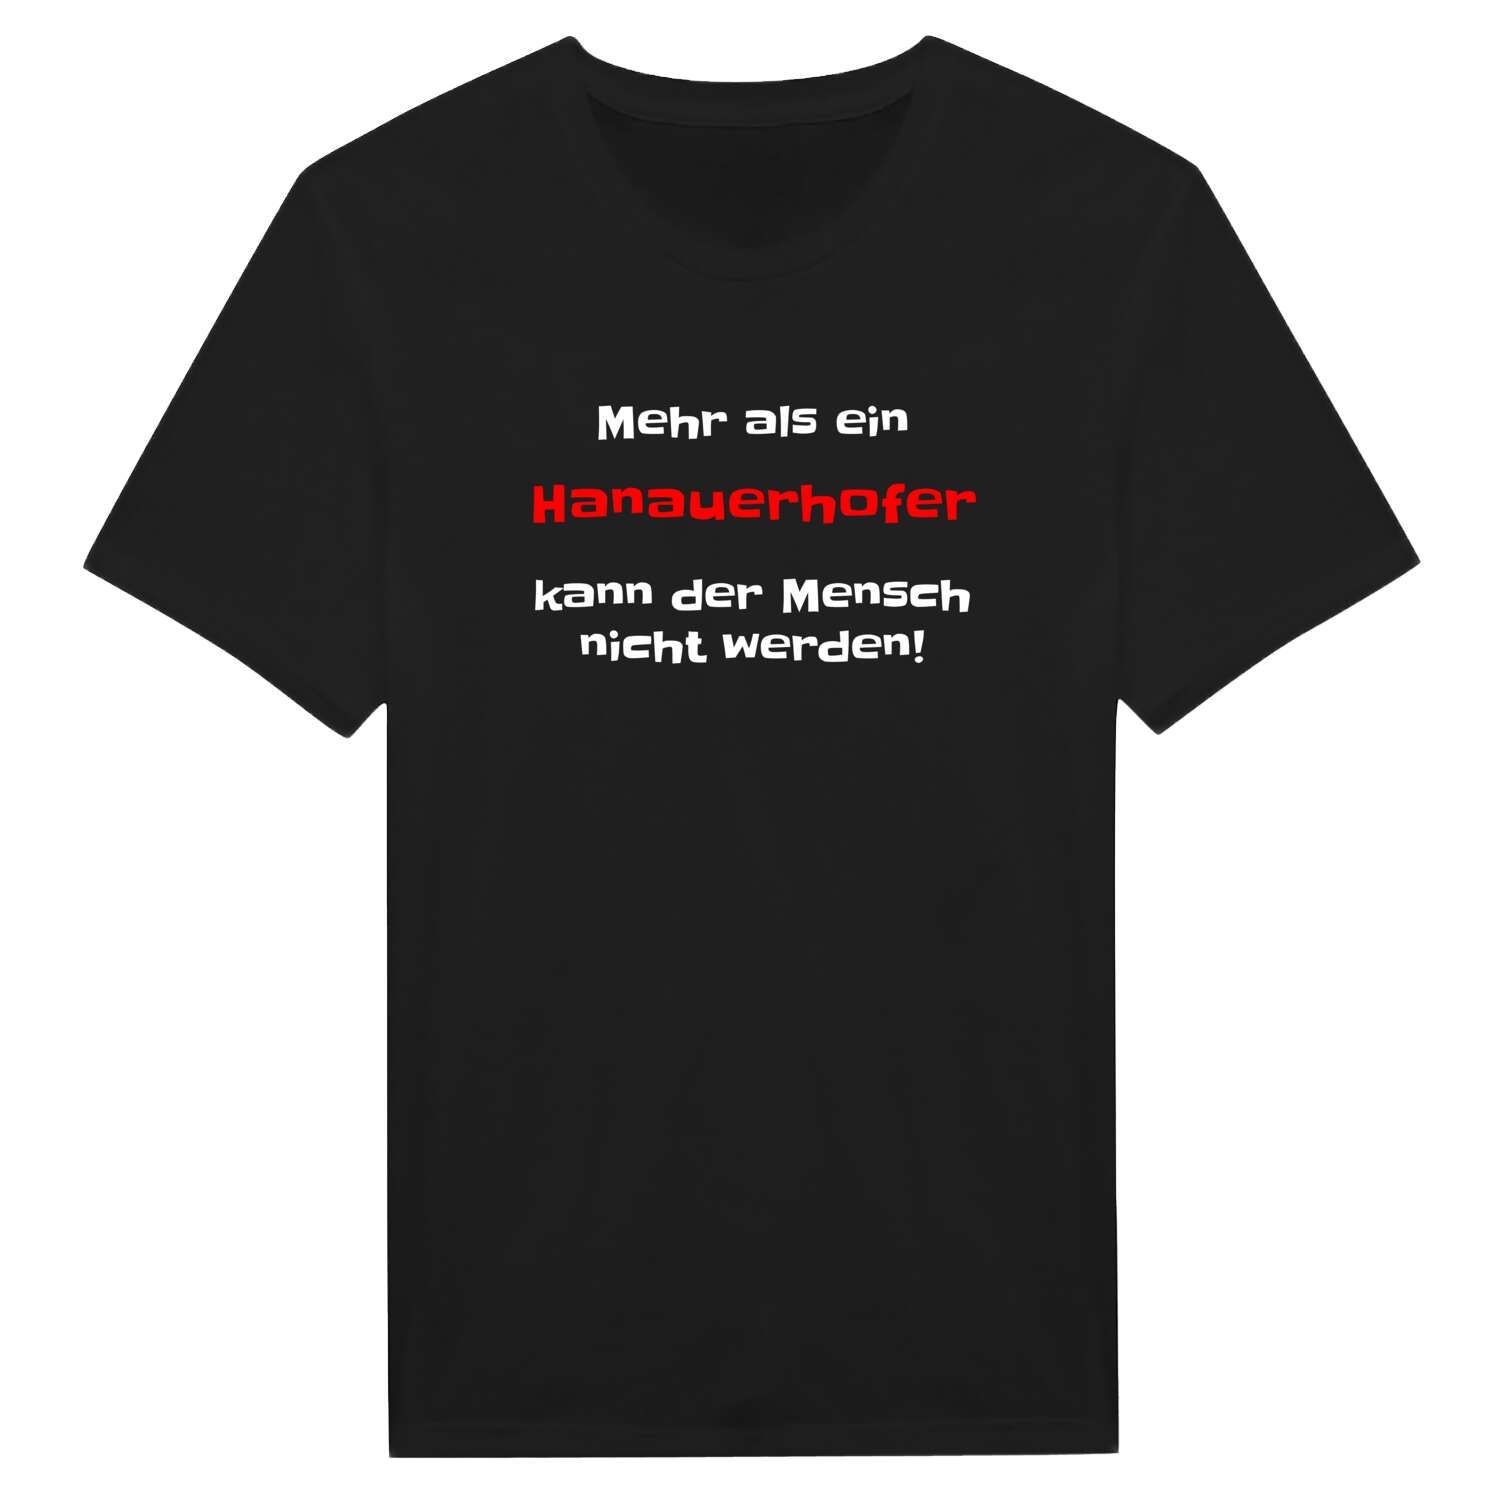 Hanauerhof T-Shirt »Mehr als ein«